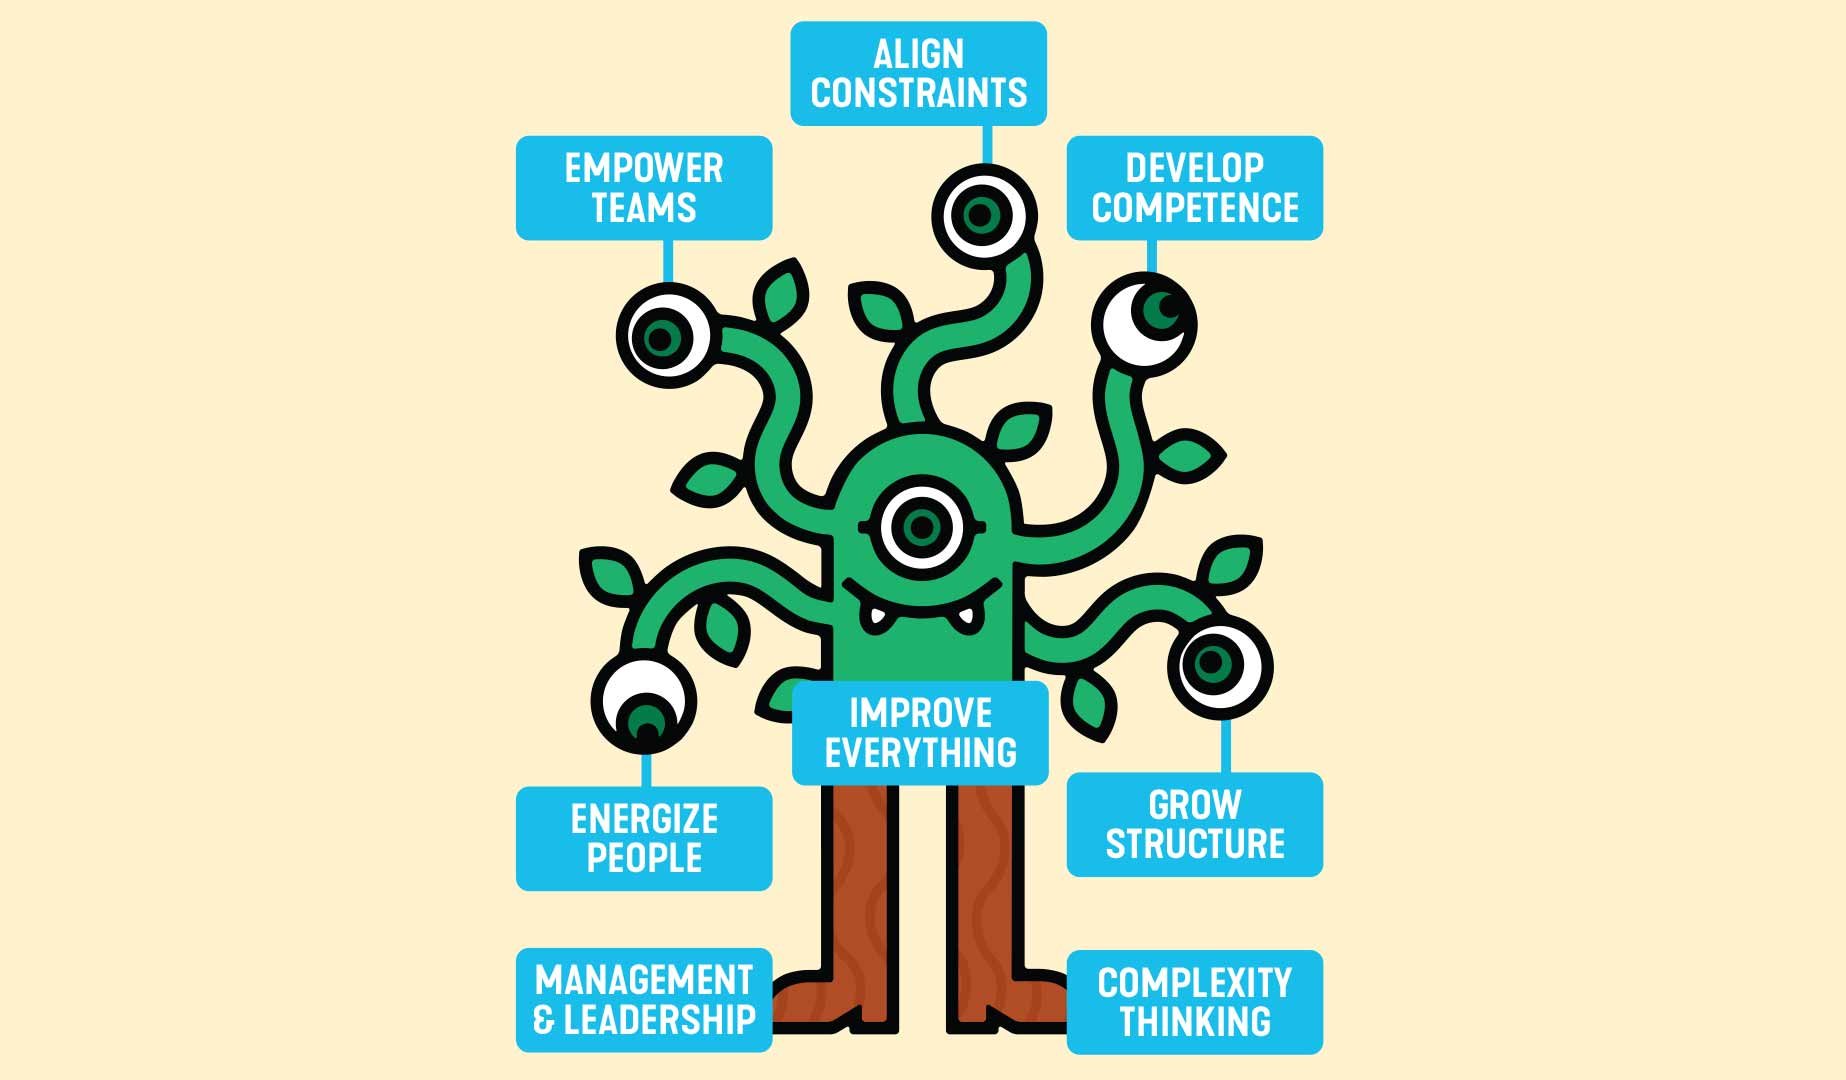 management-axians-management-3-0-dar-empowerment-as-equipas-e-liderar-para-o-sucesso